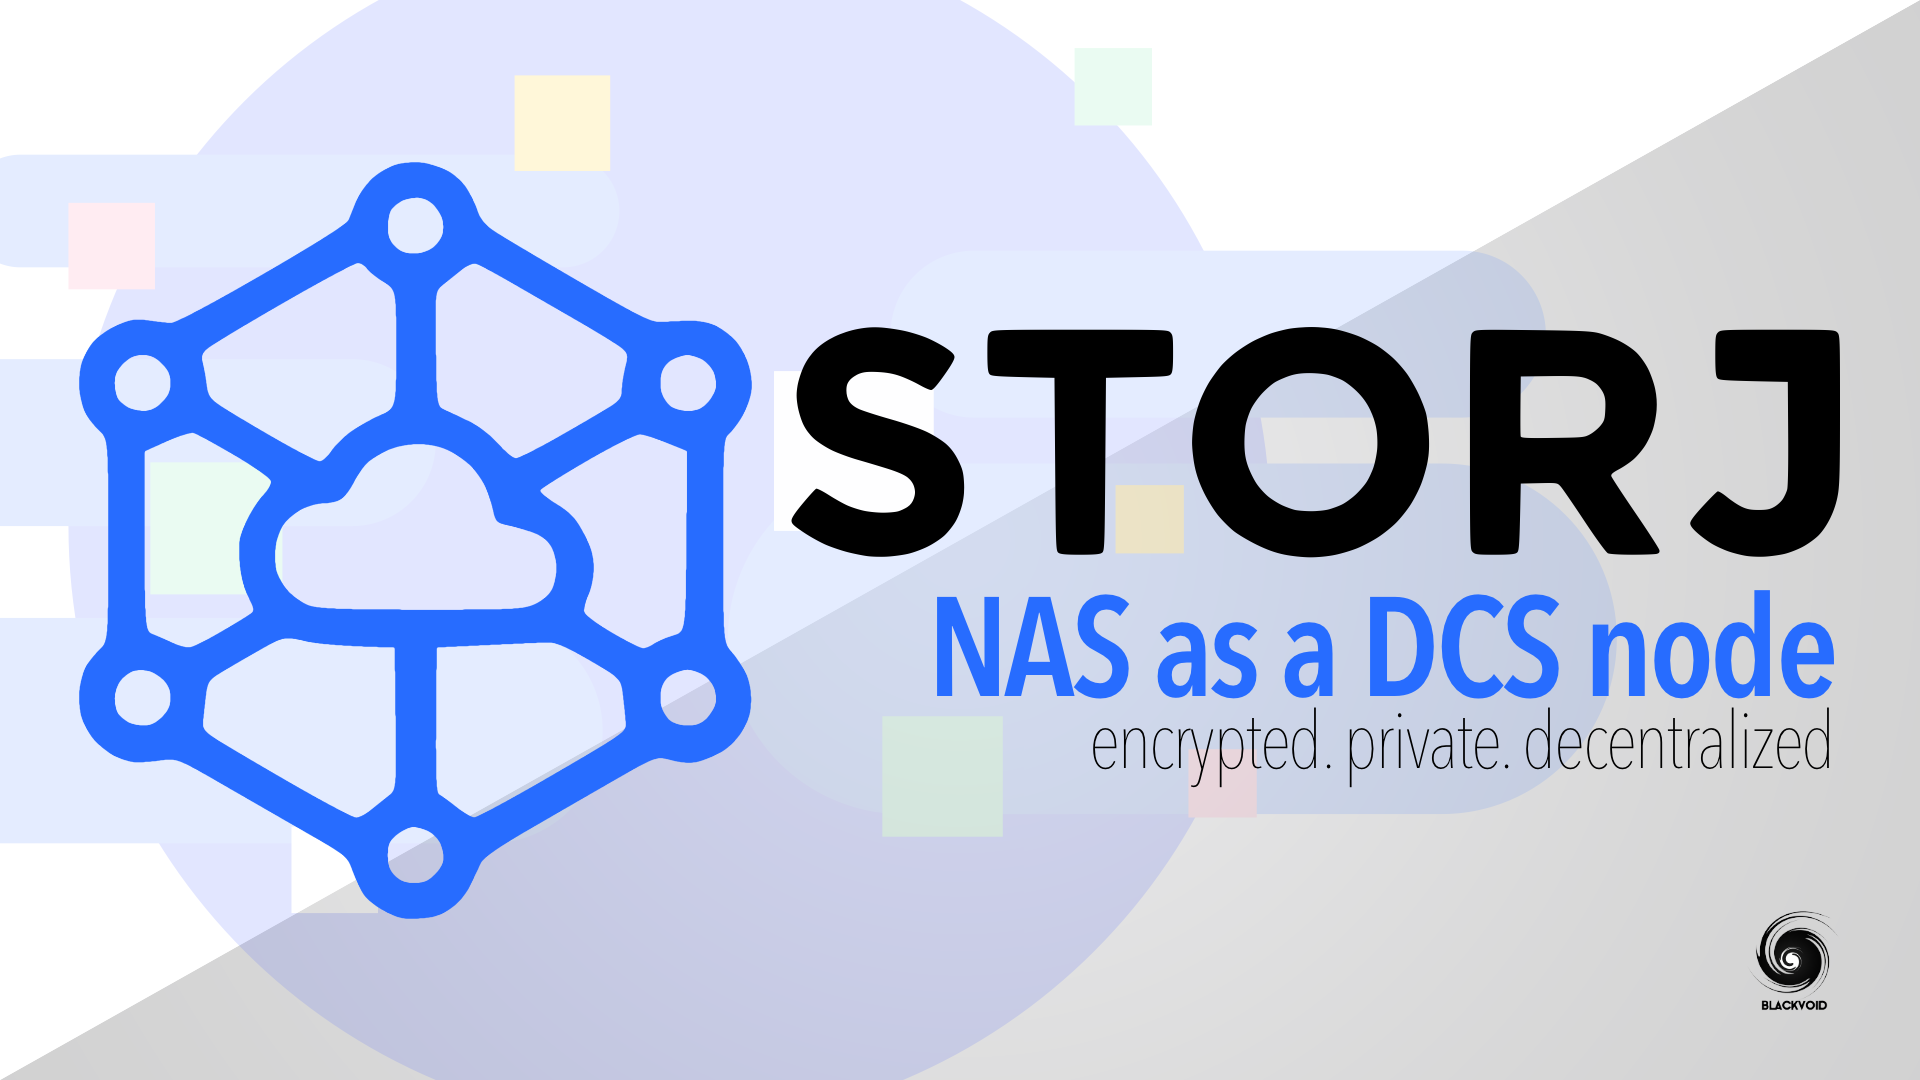 STORJ - NAS as a DCS node